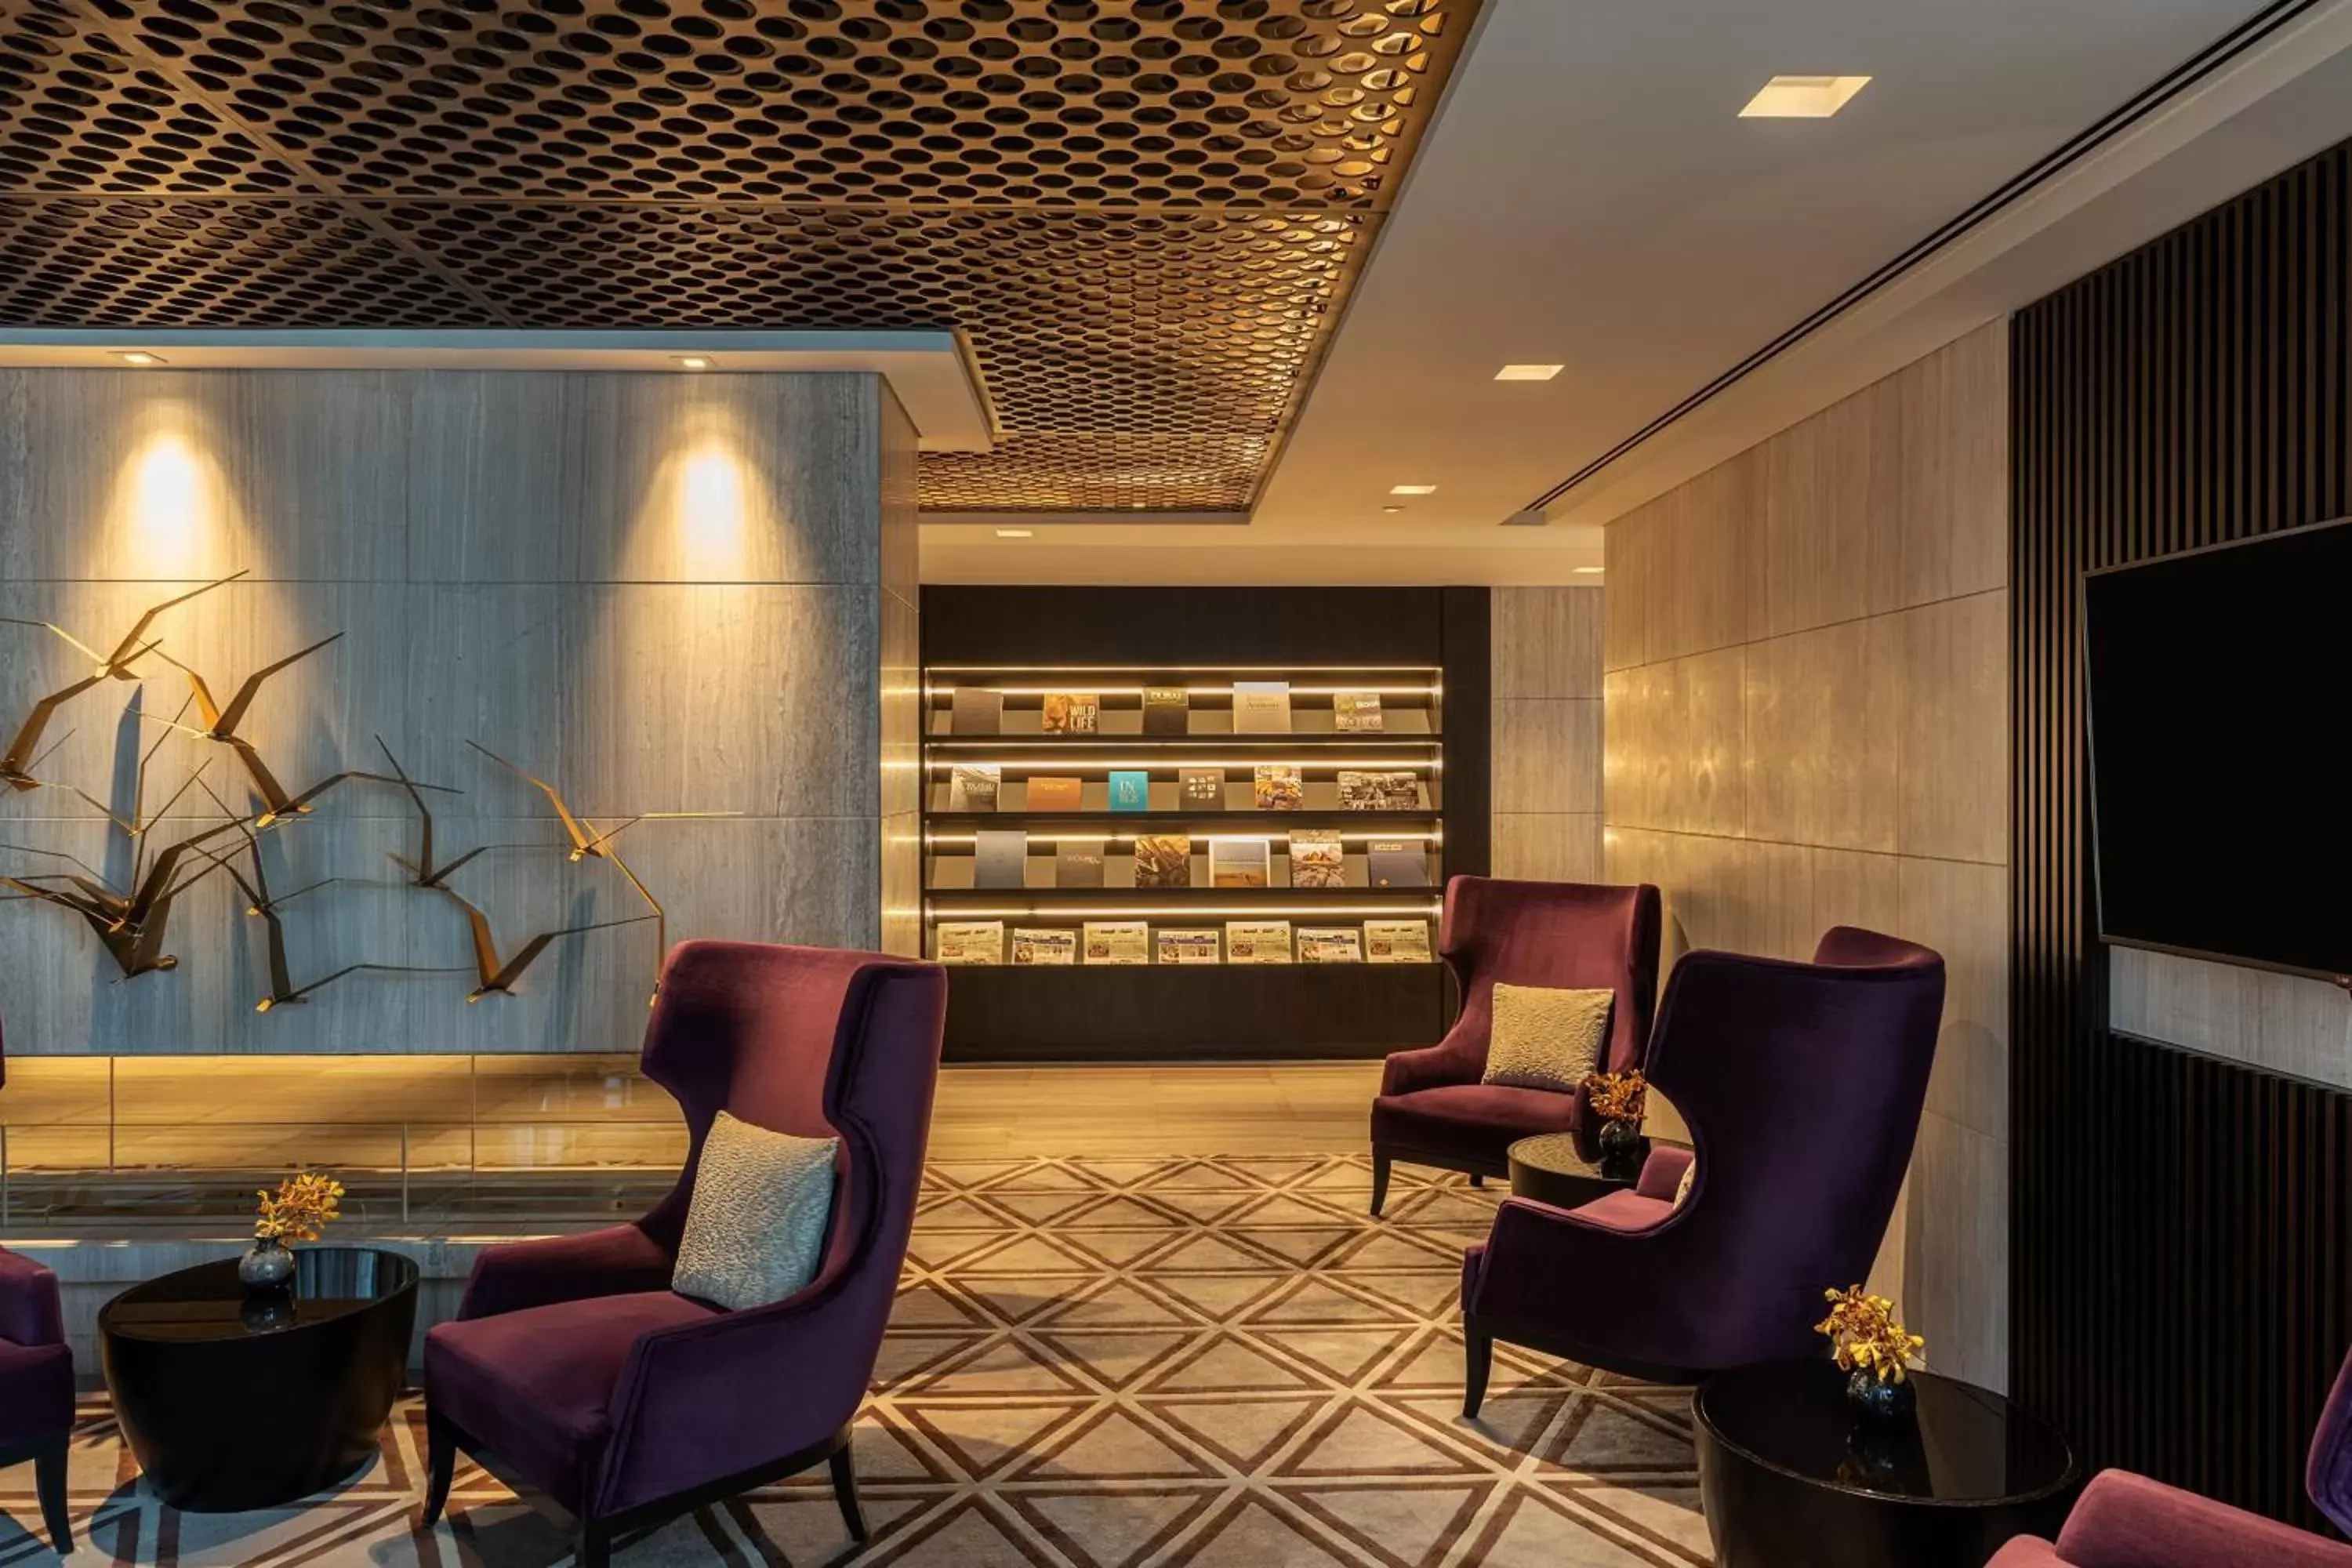 Lounge or bar, Seating Area in Sheraton Grand Hotel, Dubai